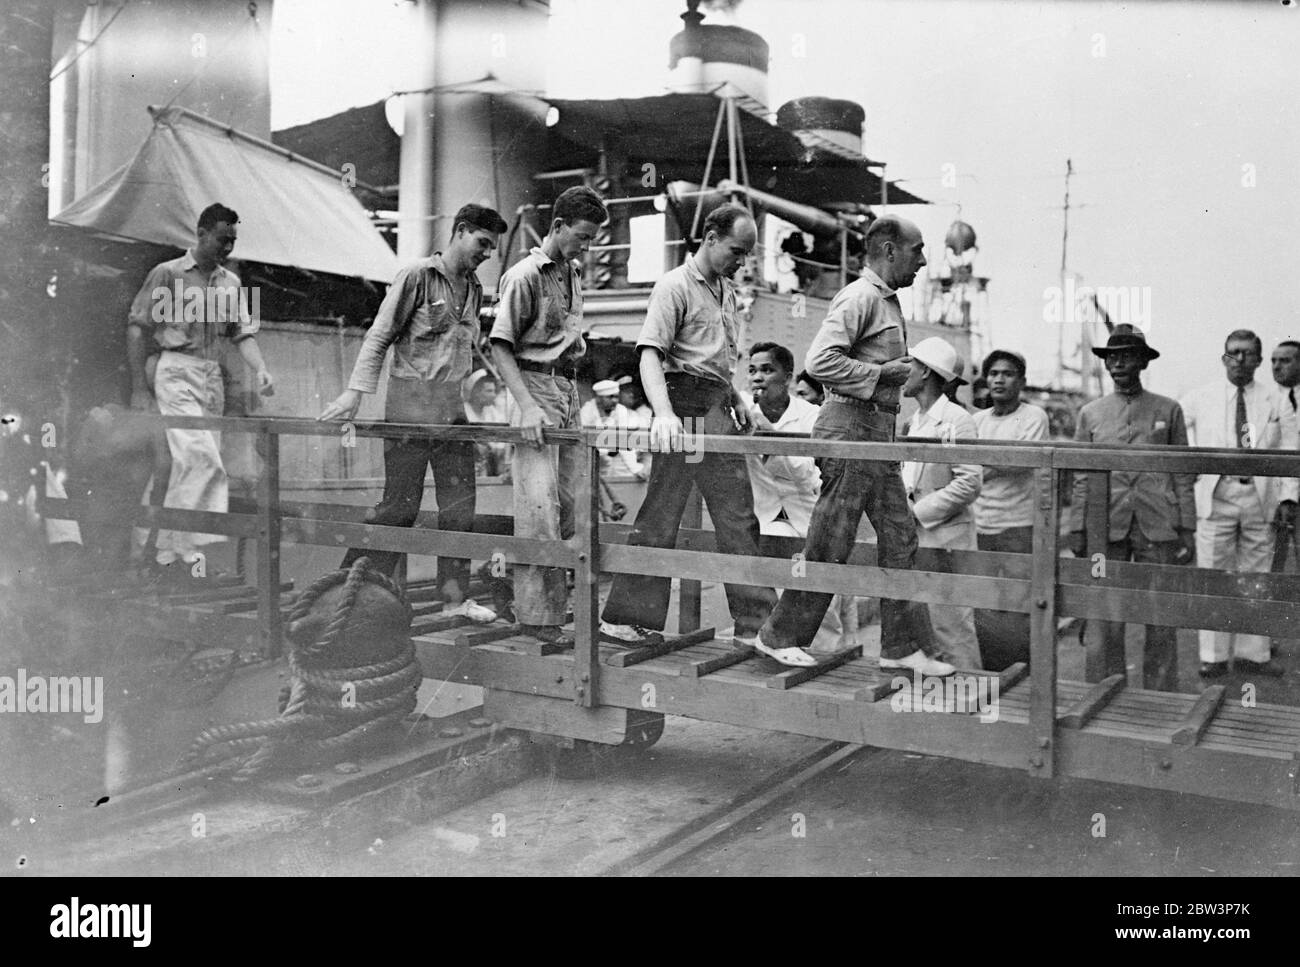 Grafische Bilder der Rettung des britischen Schiffswracks, 43 von amerikanischen Kriegsschiff in den Philippinen abgeholt. Die meisten grafischen Bilder jemals von Rettung auf See gemacht. Sie wurden aufgenommen, als 43 Überlebende des Londoner Dampfer Silverhazel vom amerikanischen Zerstörer USS Peary abgeholt wurden, nachdem das Schiff in zwei auf San Bernardino Island auf den Philippinen in einem Sturm gebrochen war. Die Überlebenden verbrachten zwei Tage und Nächte auf einem wellengefegten Felsen, bevor sie auf improvisierten Flößen entkamen. Frau Neil Williams, eine amerikanische Passagierin, wurde verrückt und wurde vom Felsen gefegt und ertrunken. Die Körper der Kappe Stockfoto